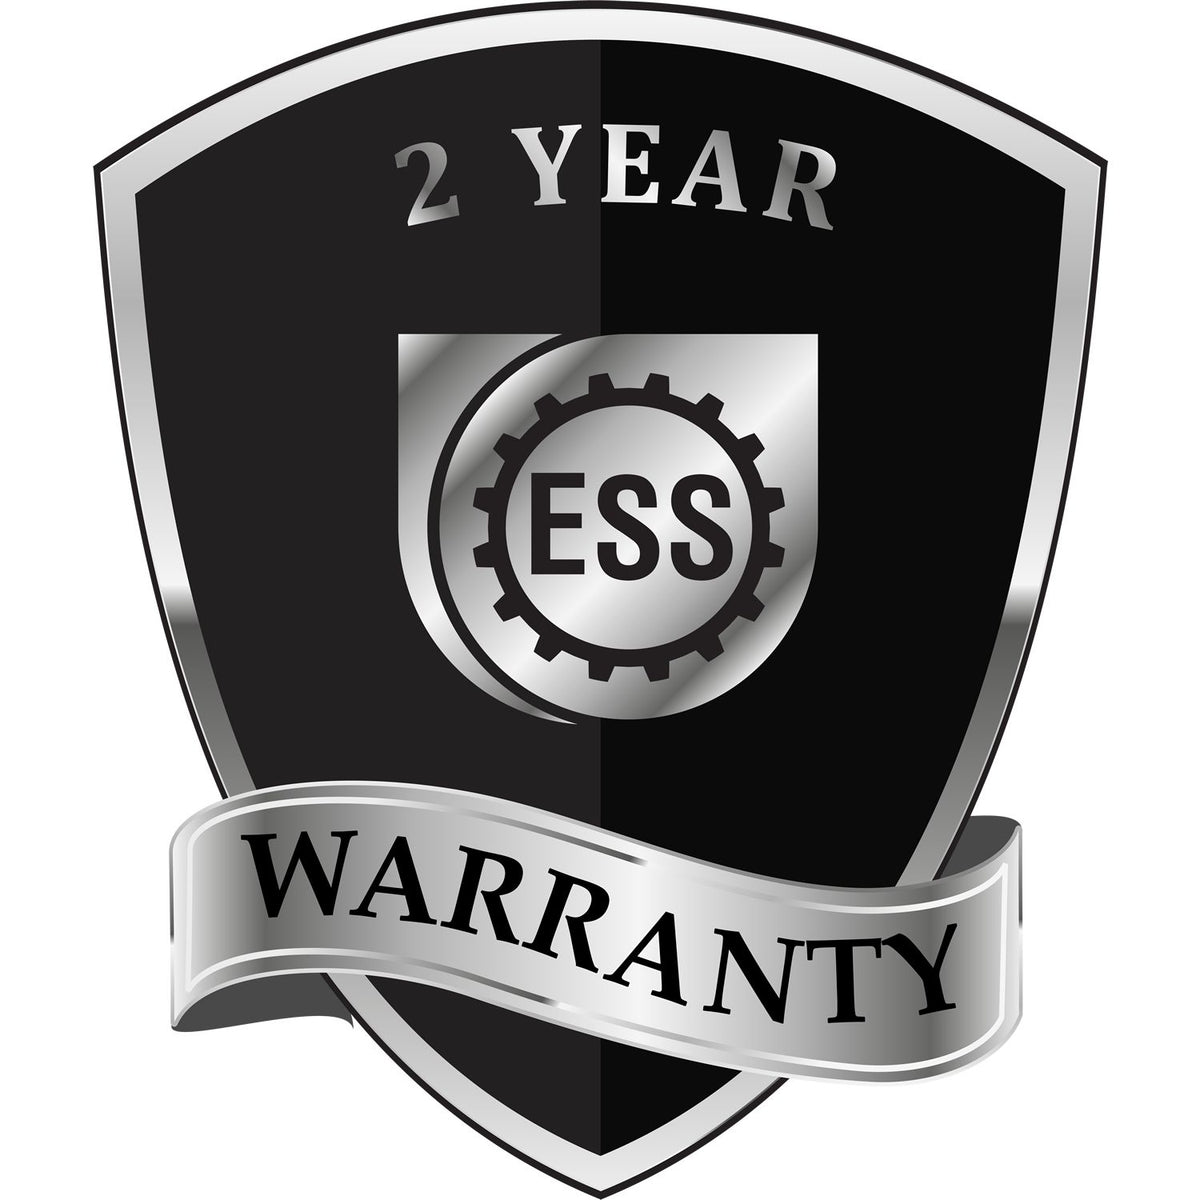 A badge or emblem showing a warranty icon for the Delaware Desk Surveyor Seal Embosser